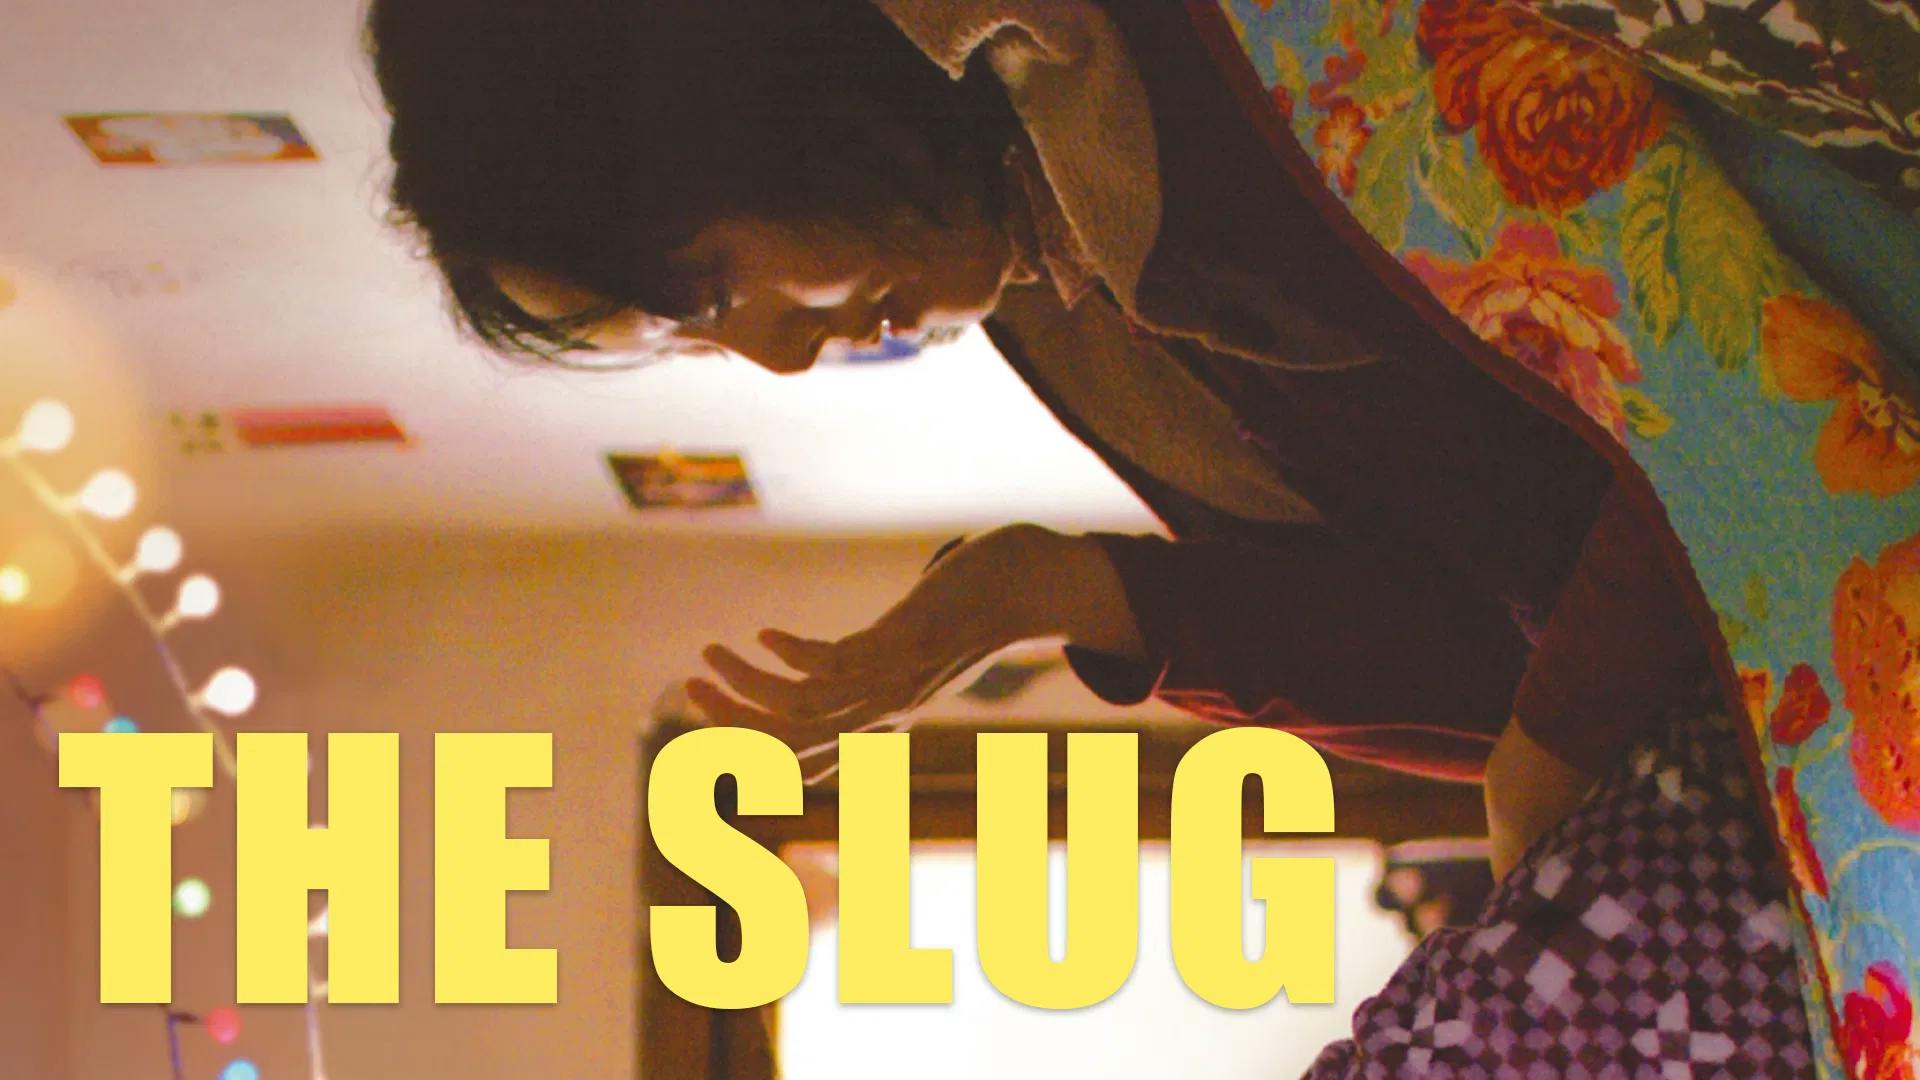 The Slug